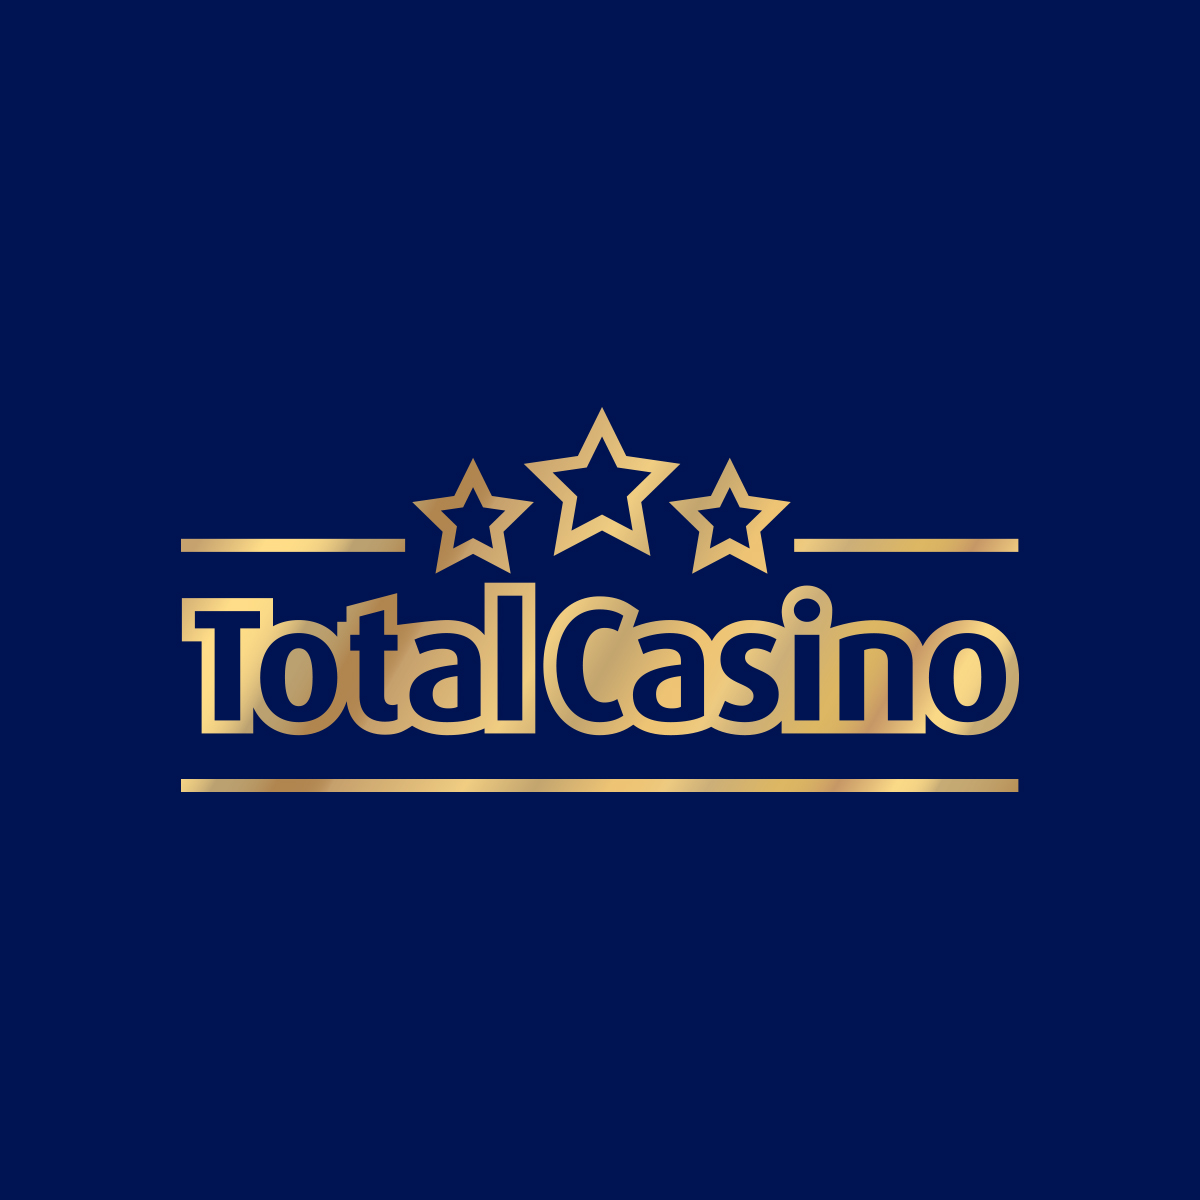 legalne strony kasynowe jak total casino